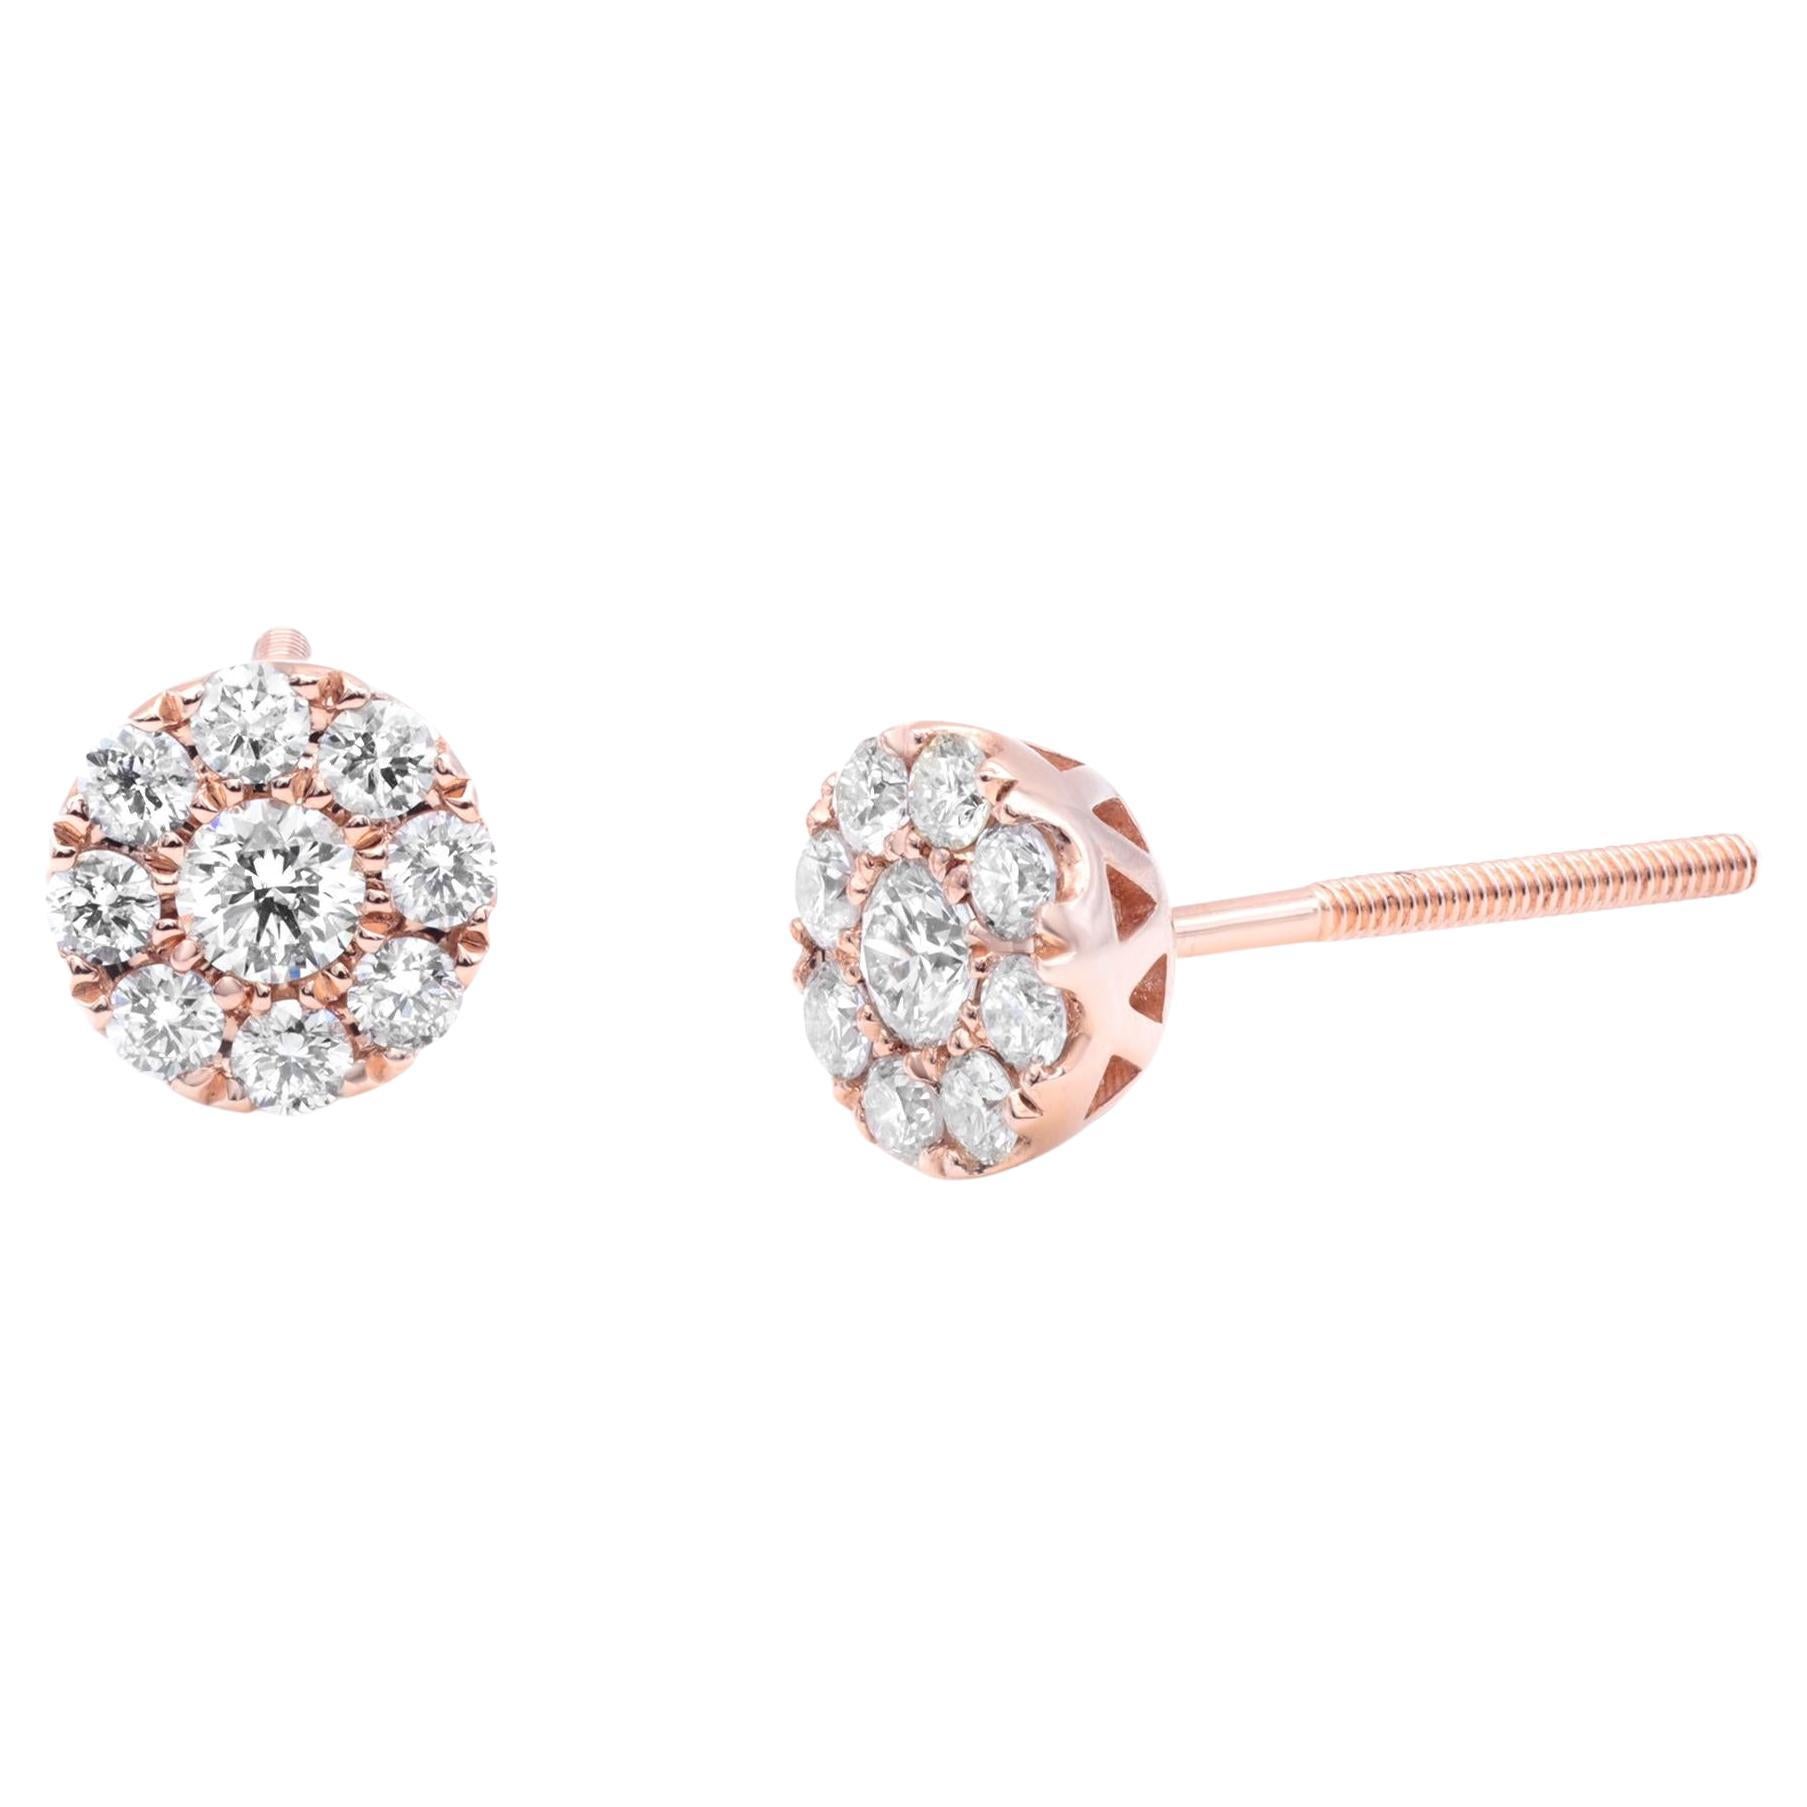 Rachel Koen Diamond Frame Stud Earrings in 14K Rose Gold 0.44cttw